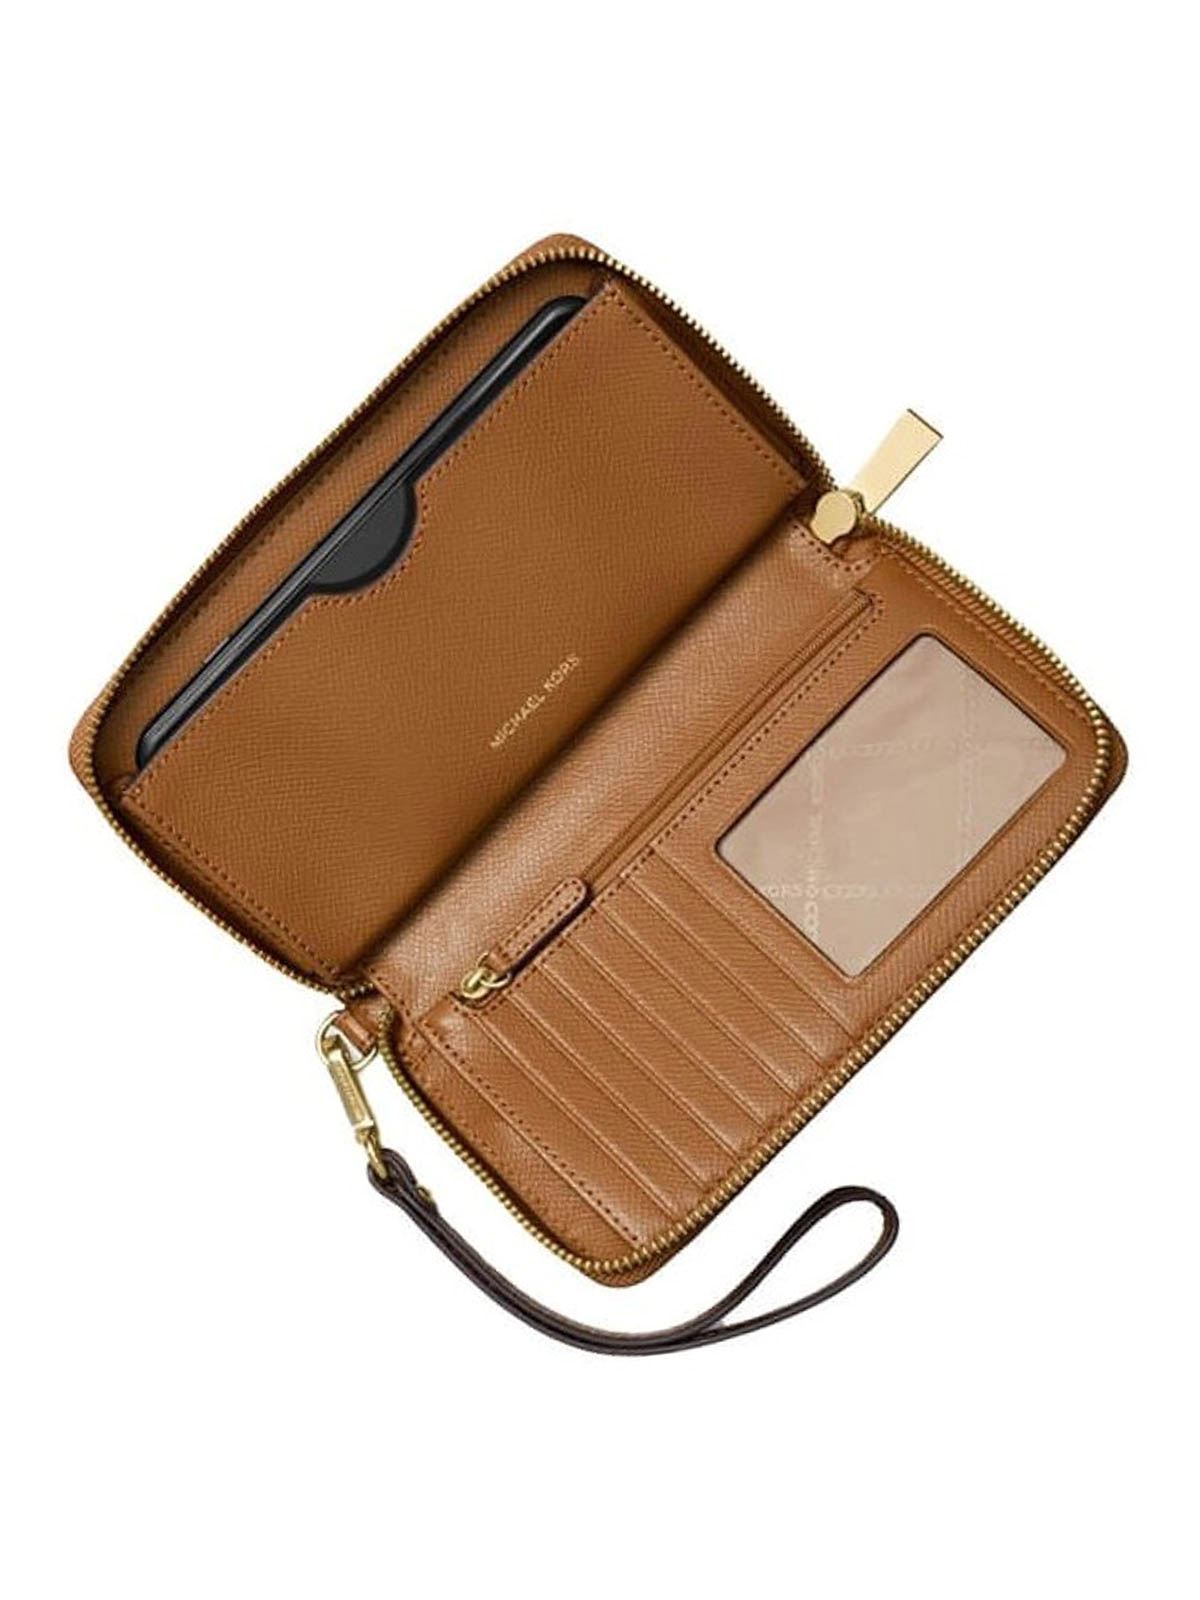 Wallets & purses Michael Kors - Acorn large smartphone wristlet -  32H4GTVE9L203